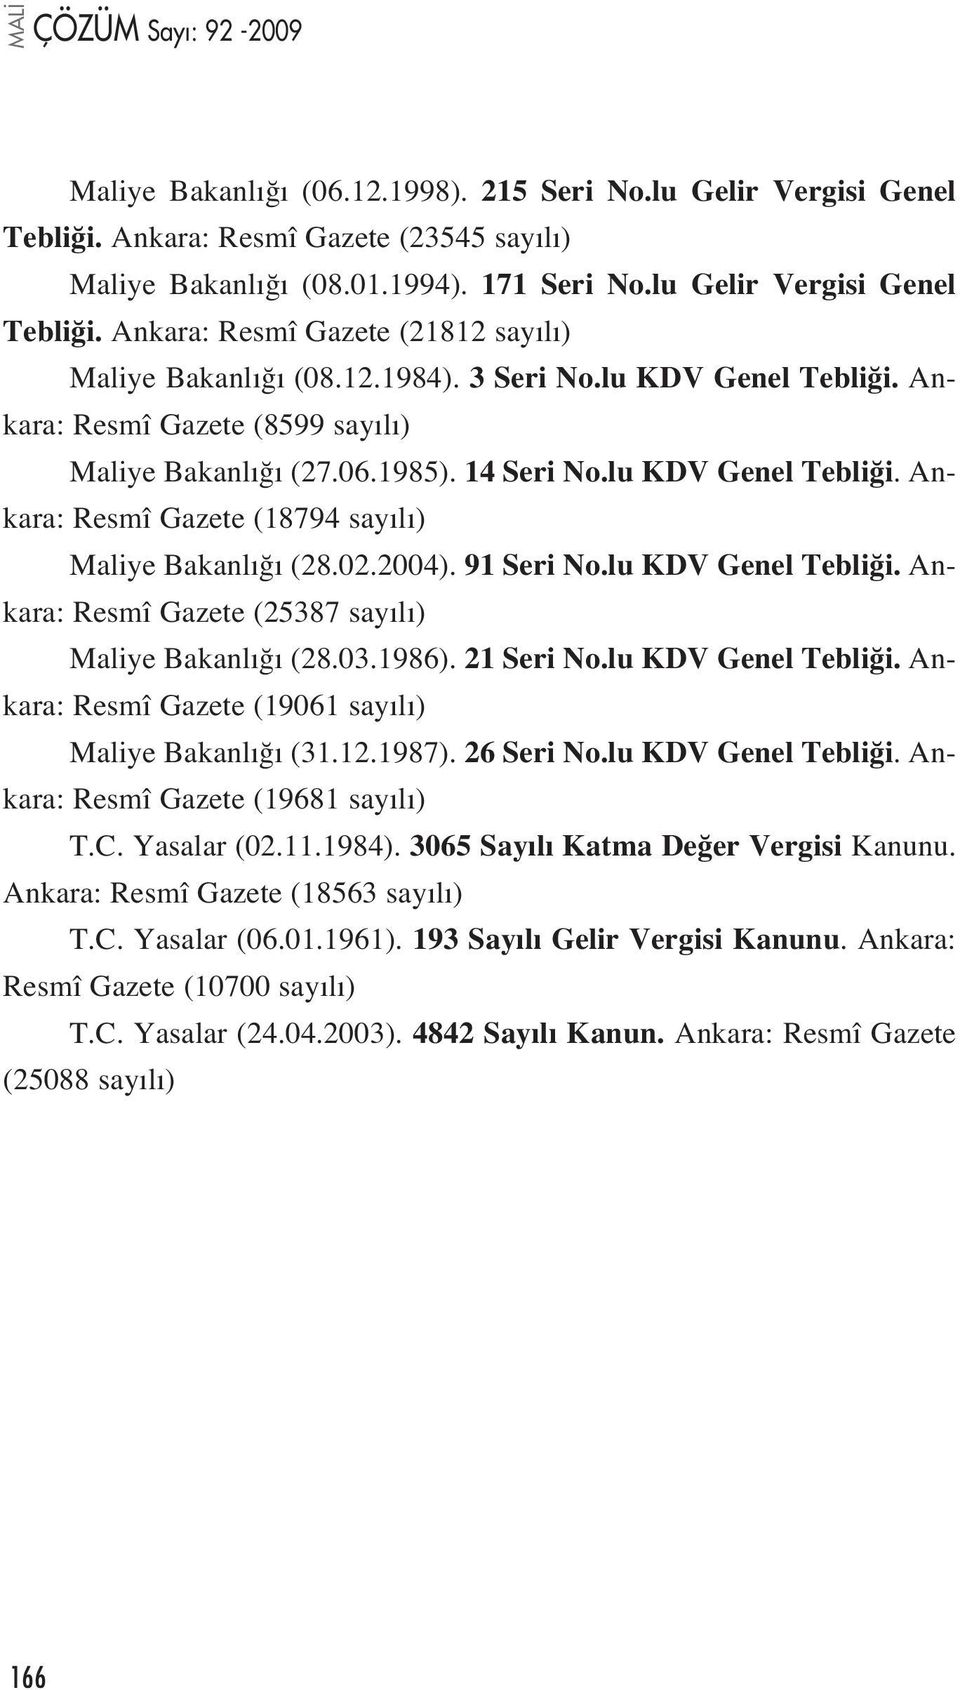 2004). 91 Seri No.lu KDV Genel Tebli i. Ankara: Resmî Gazete (25387 say l ) Maliye Bakanl (28.03.1986). 21 Seri No.lu KDV Genel Tebli i. Ankara: Resmî Gazete (19061 say l ) Maliye Bakanl (31.12.1987).